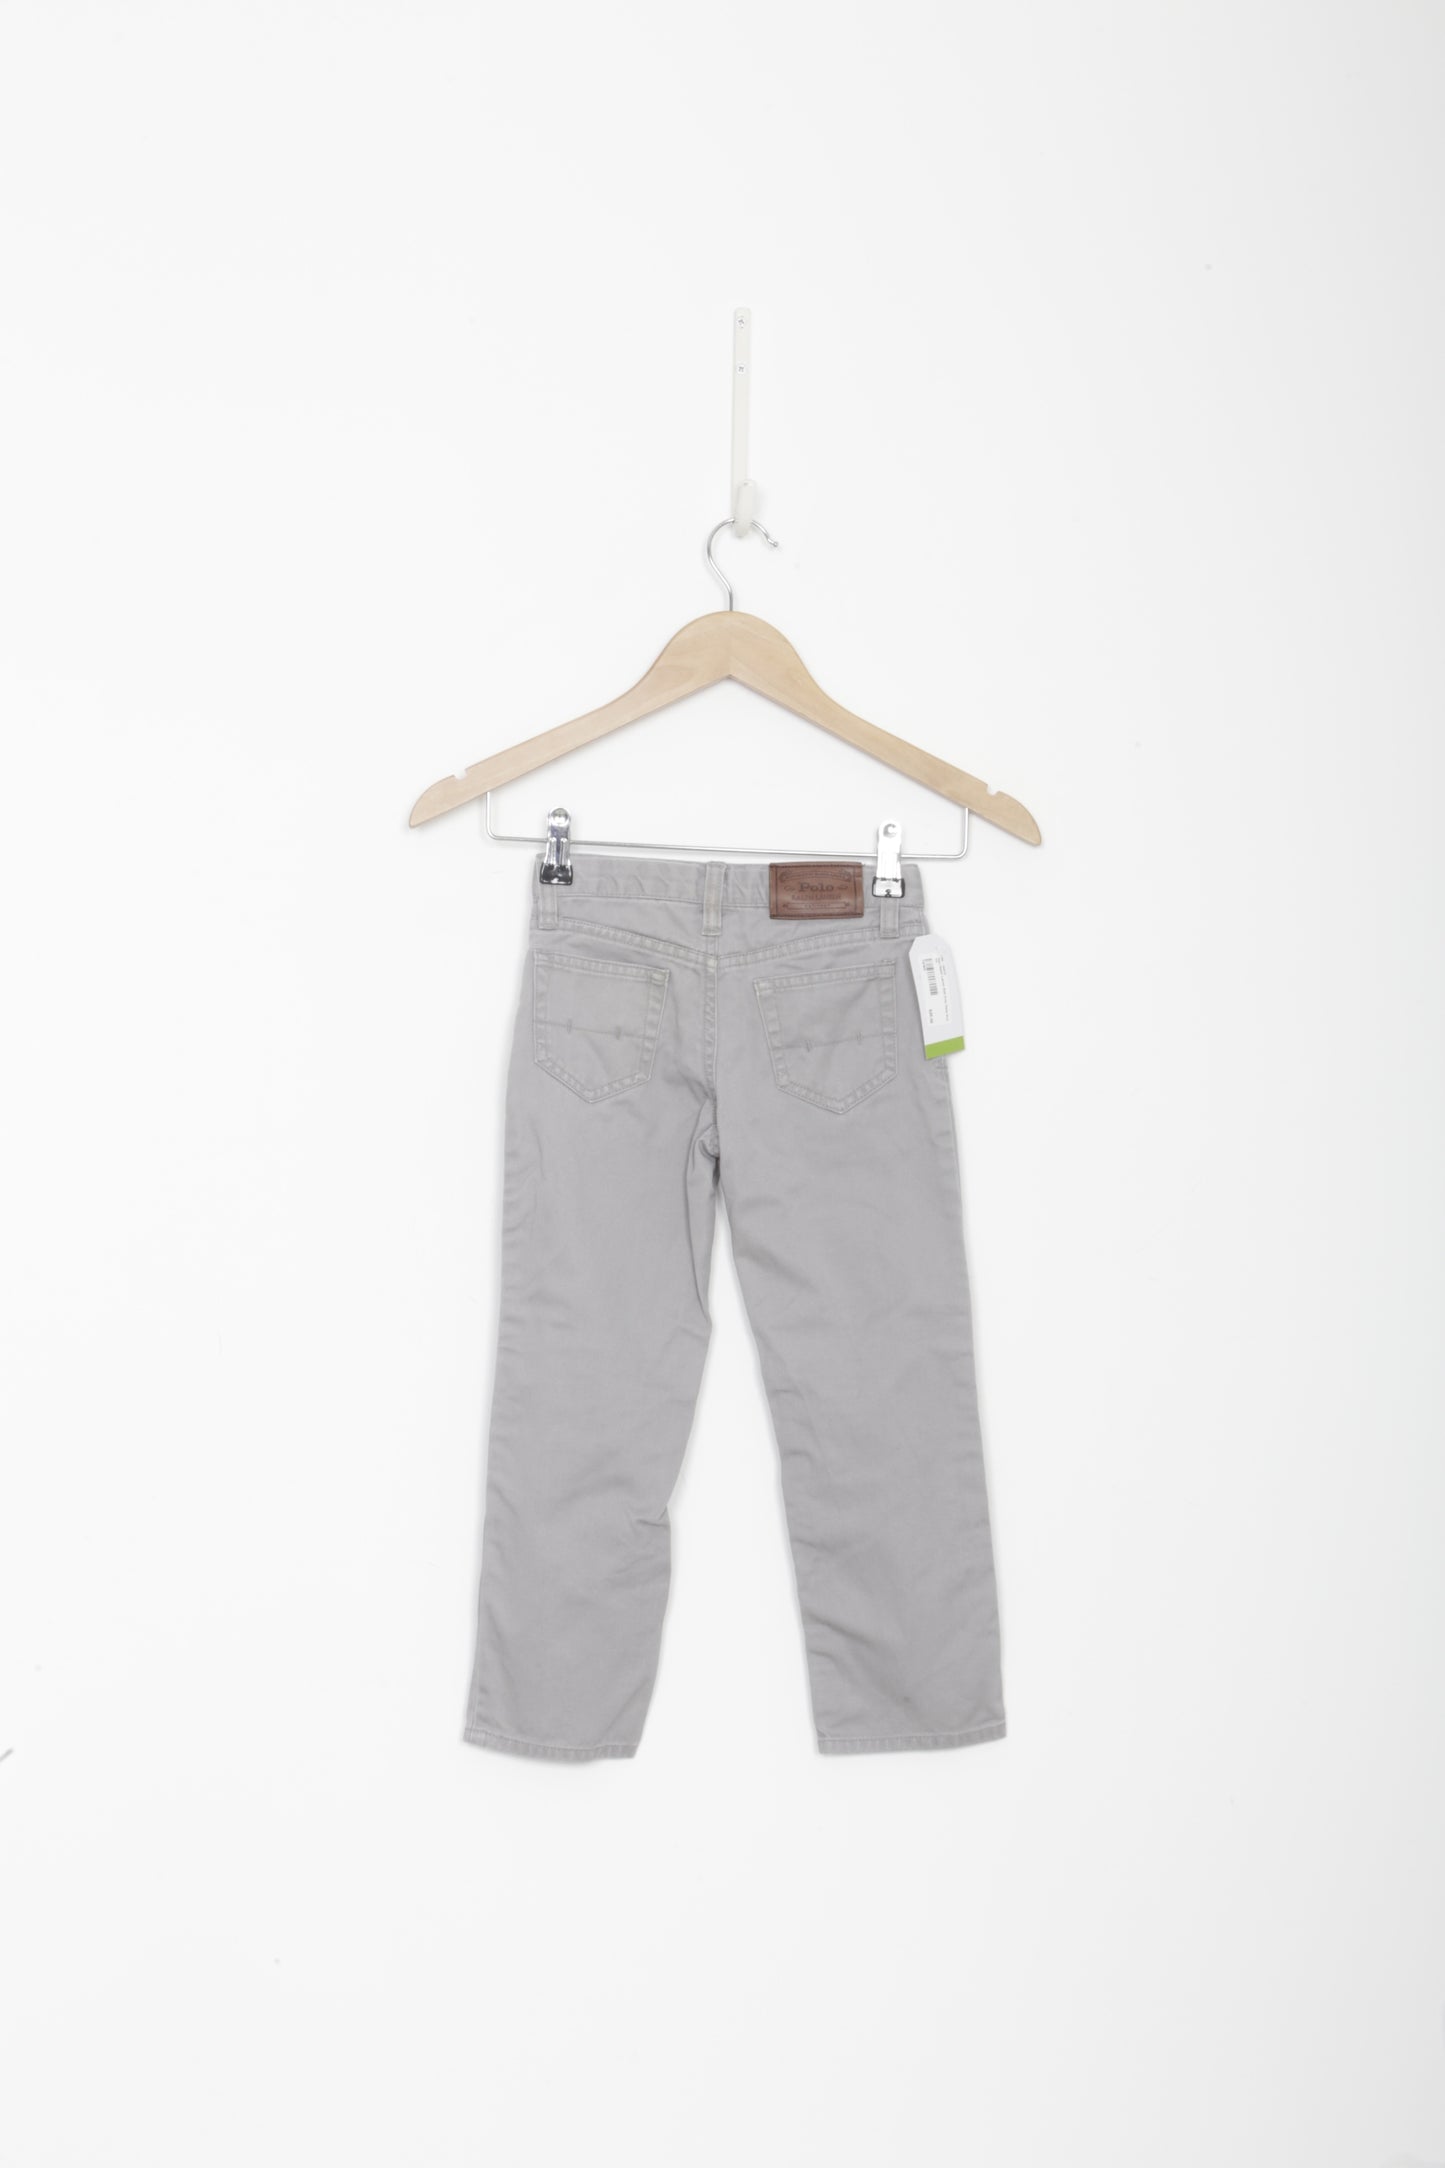 Polo Ralph Lauren Kids Grey Pants Size 4 YO